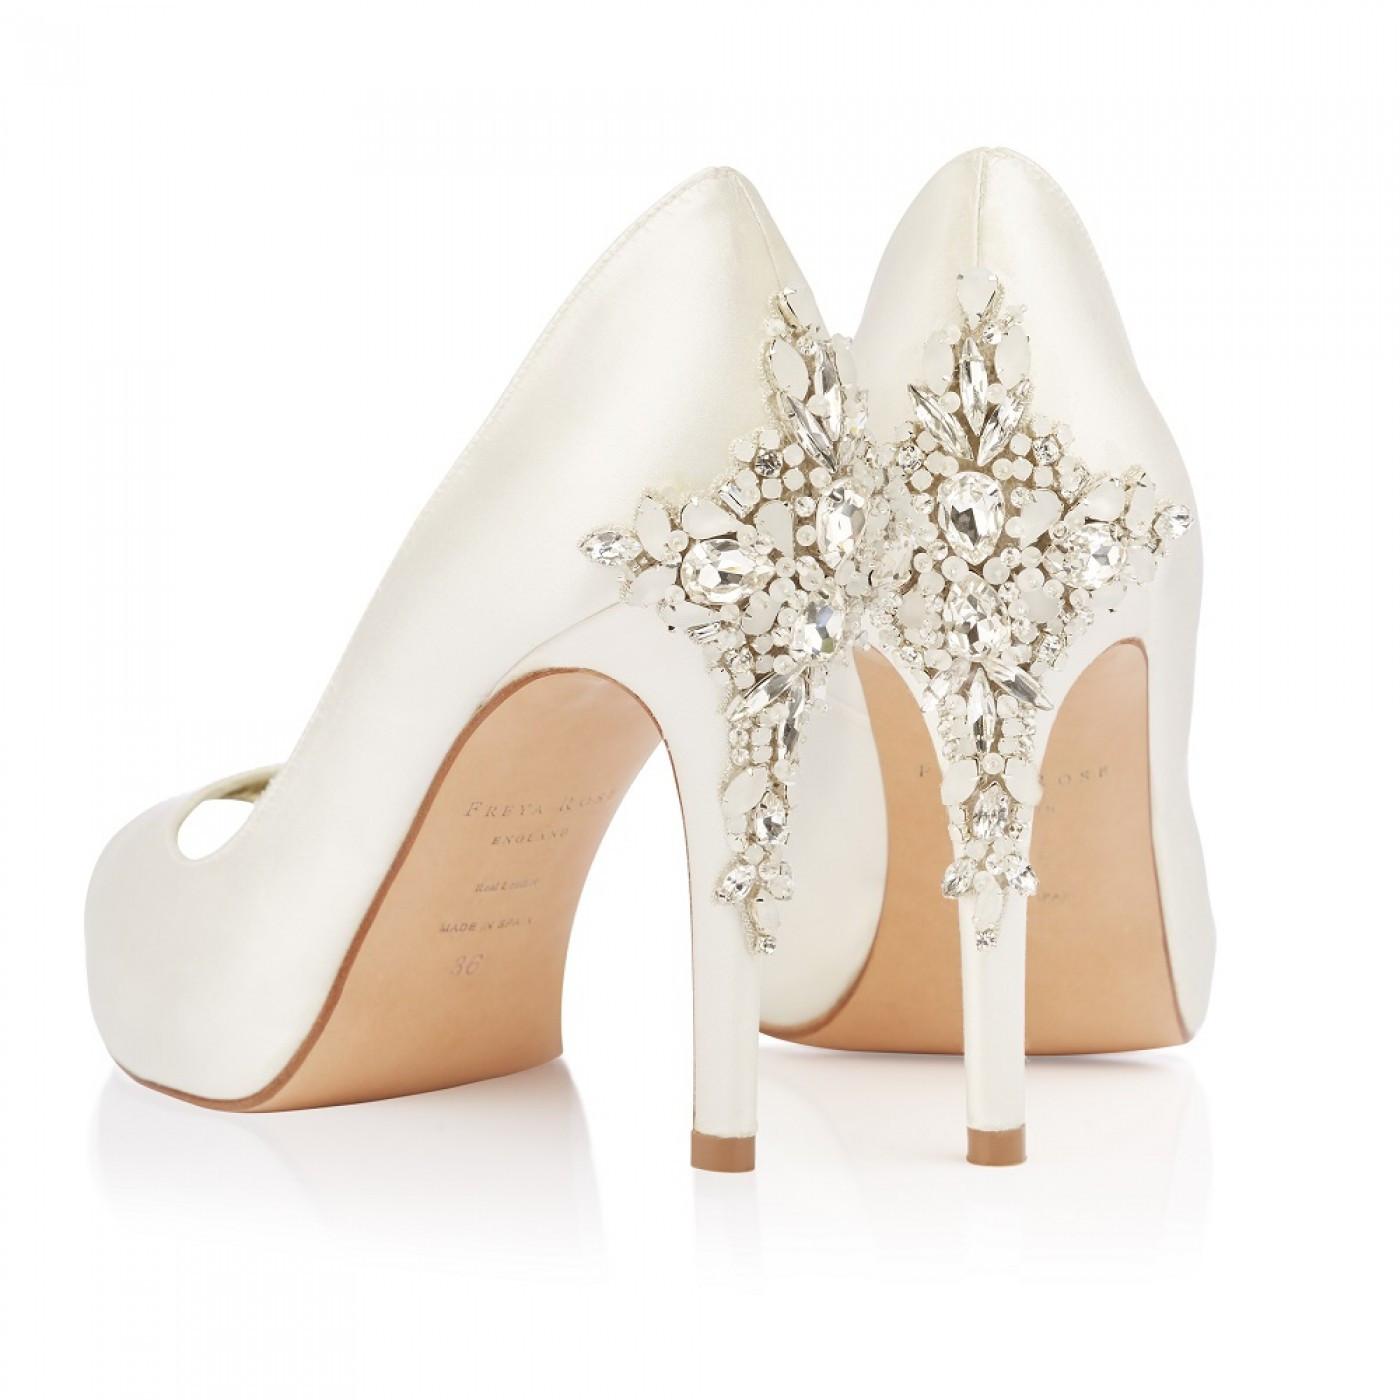 Ivory Satin Wedding Shoes
 Freya Rose Elizabeth Ivory Satin Crystal Embellished Heel